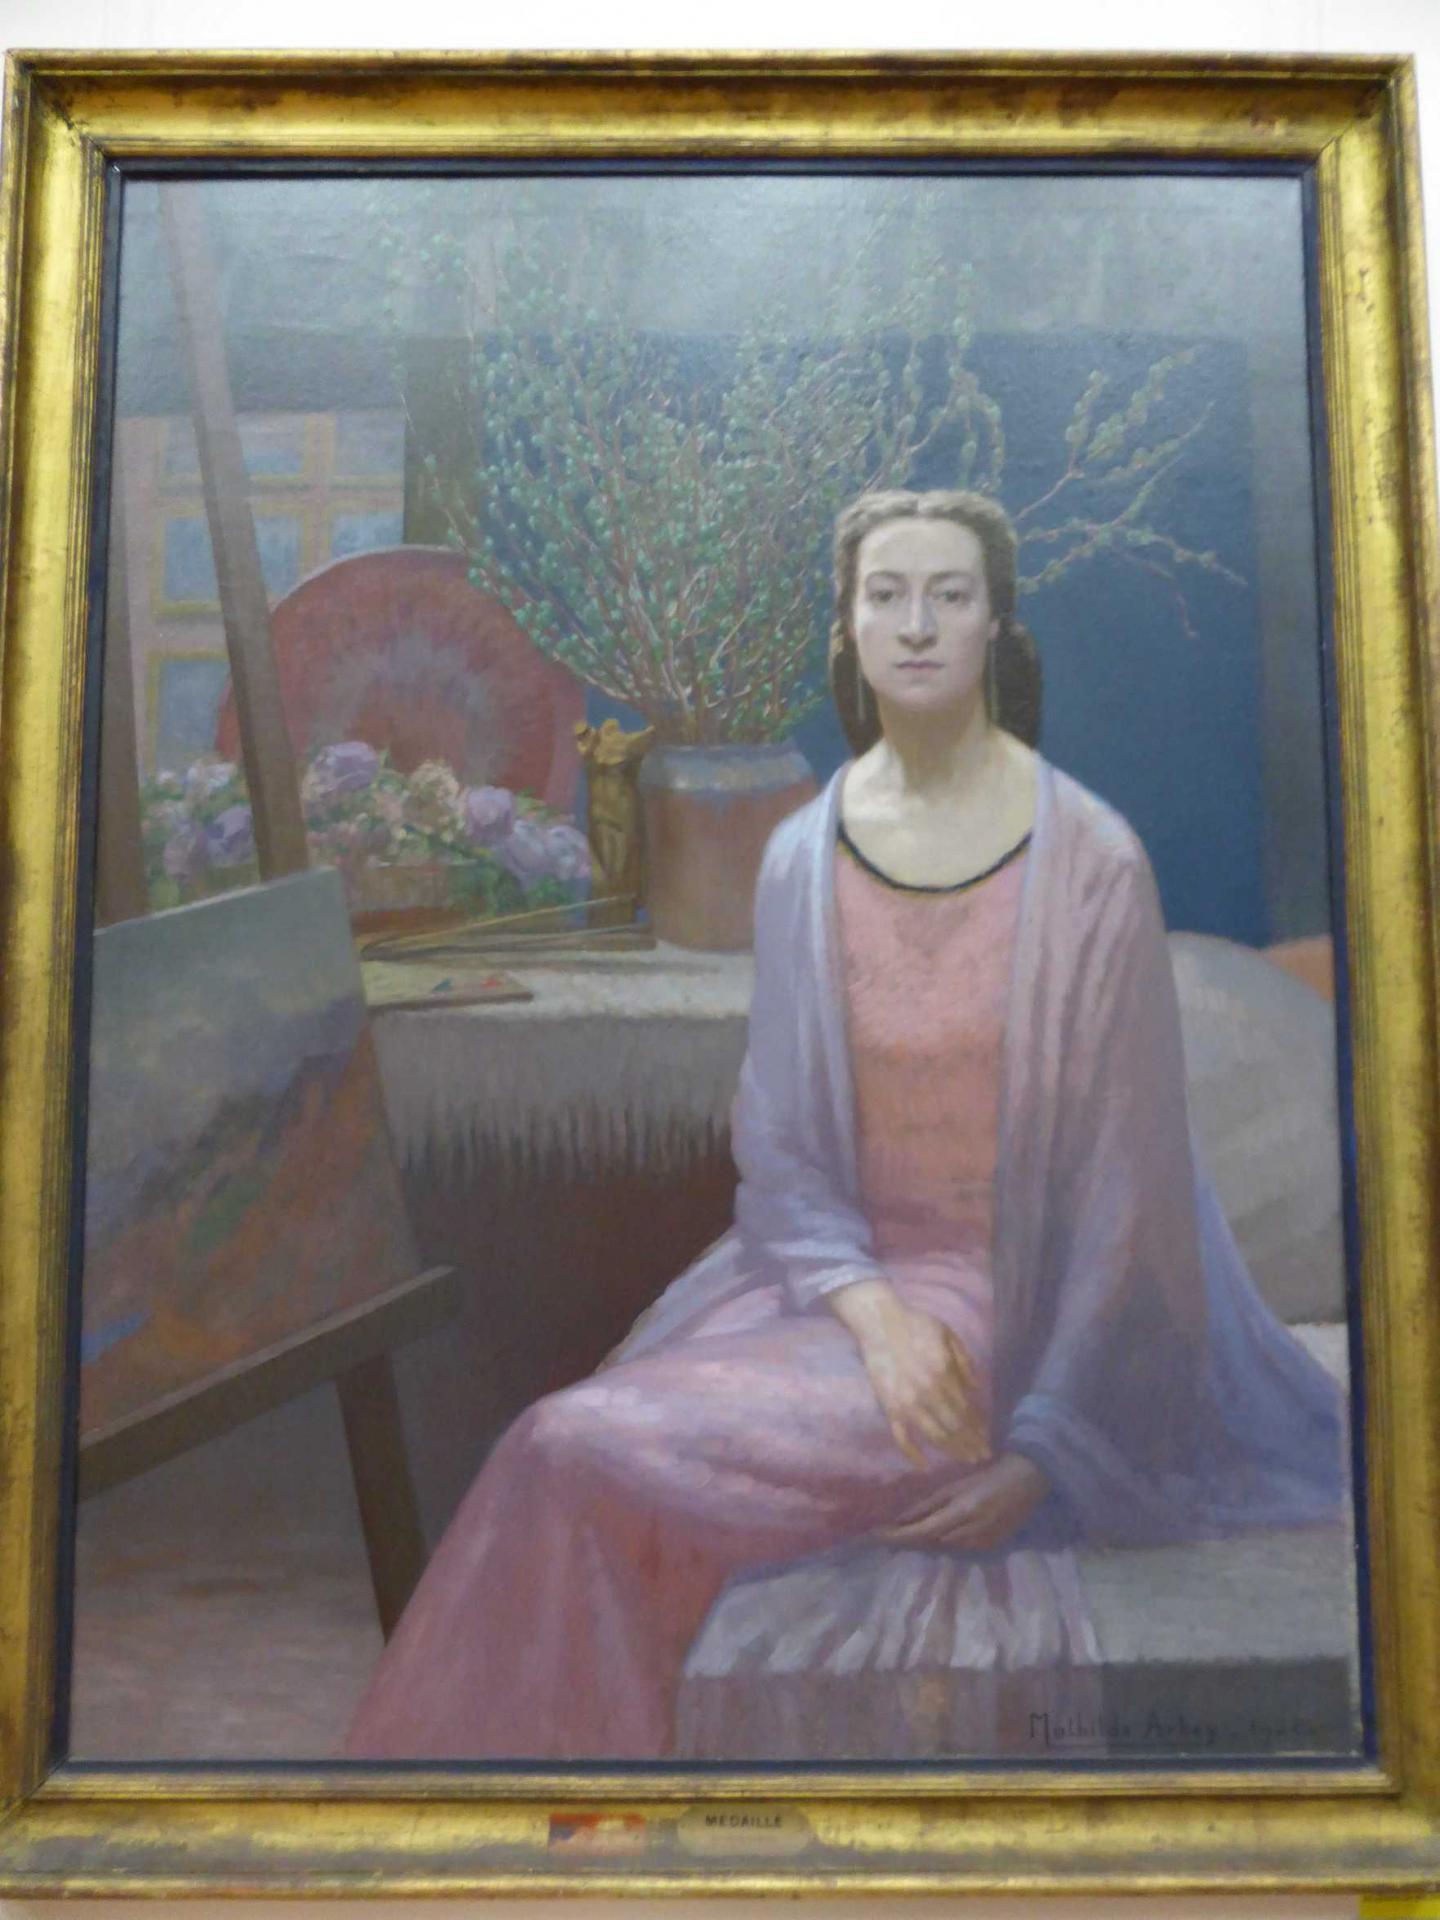 Mathilde Arbey, Fin de journée - Autoportrait dans l'atelier, 1928, Libourne, Musée municipal (cl. Ph. Cachau)